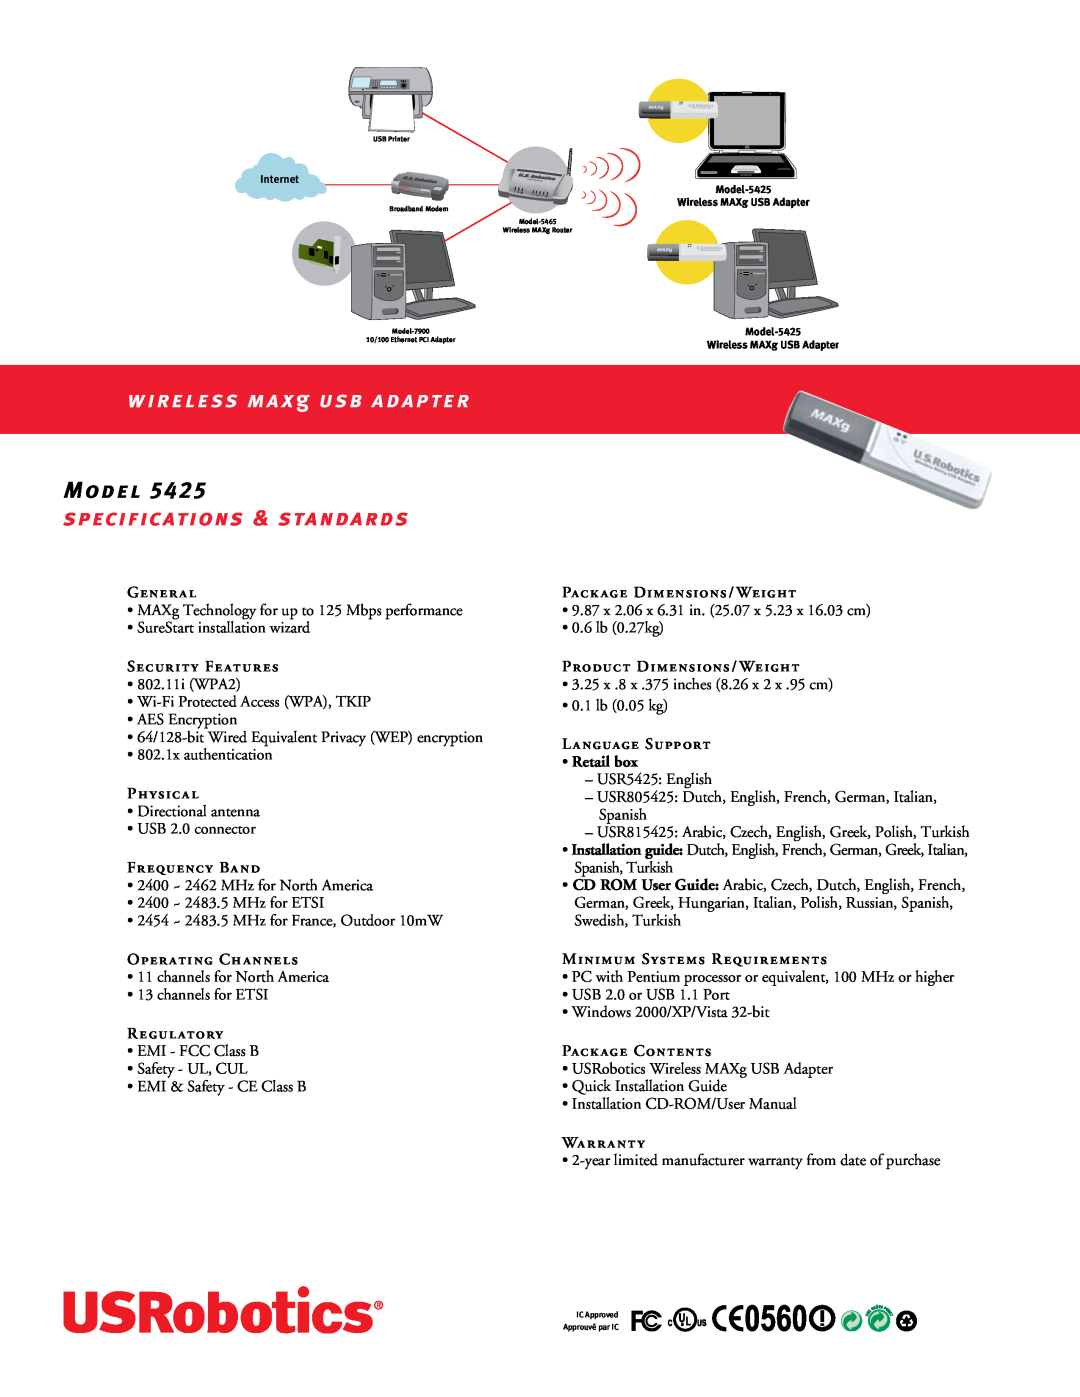 USRobotics 5425 manual Model, WIRELESS MAX g USB ADAPTER, Specifications & Standards 